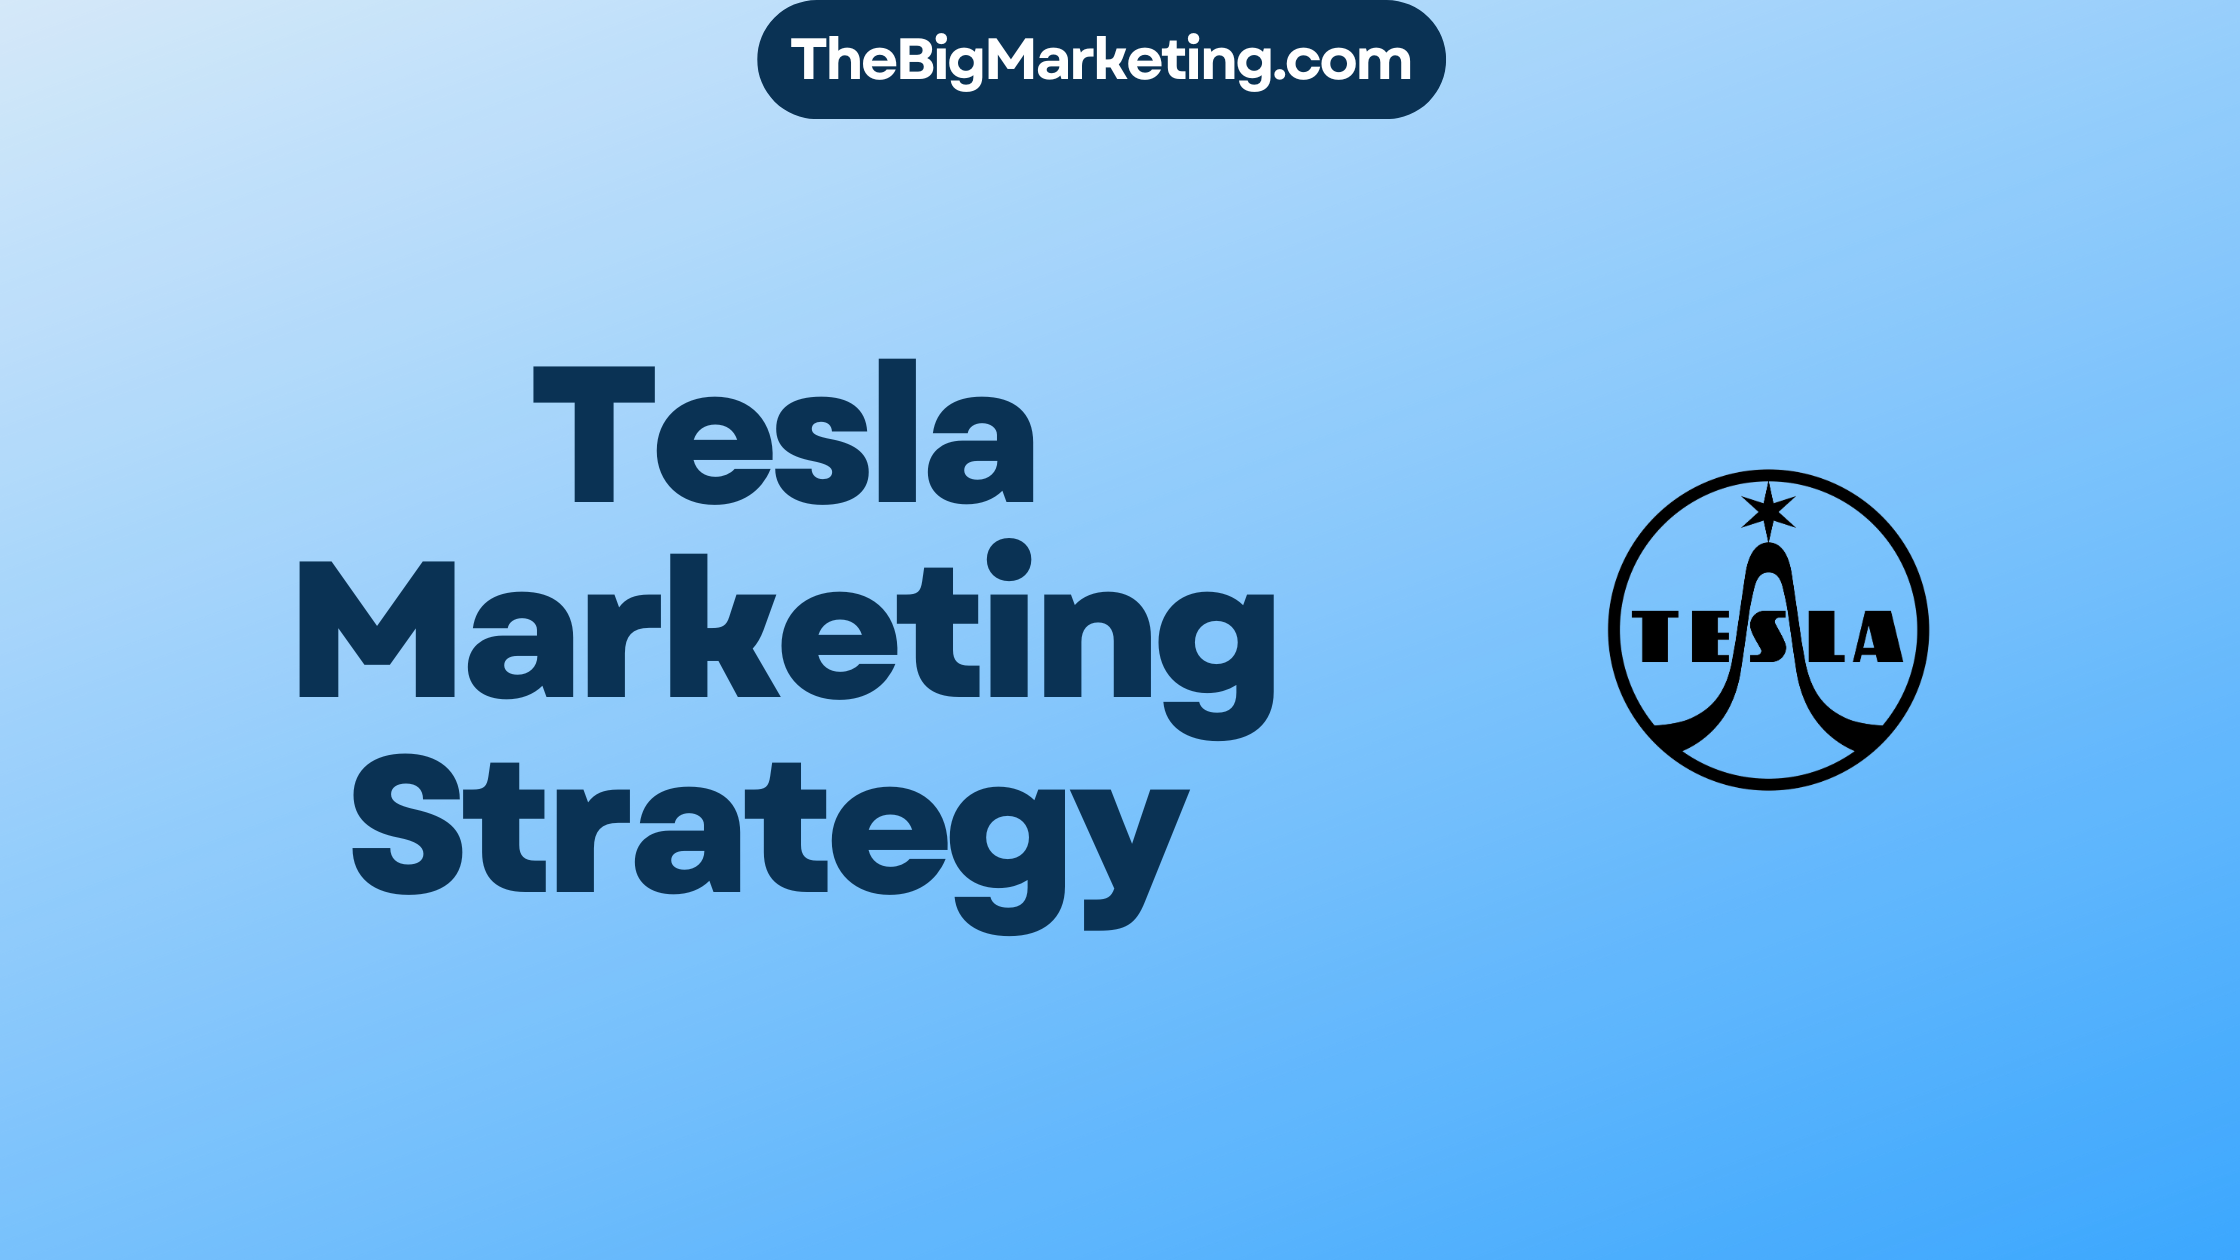 Tesla Marketing Strategy